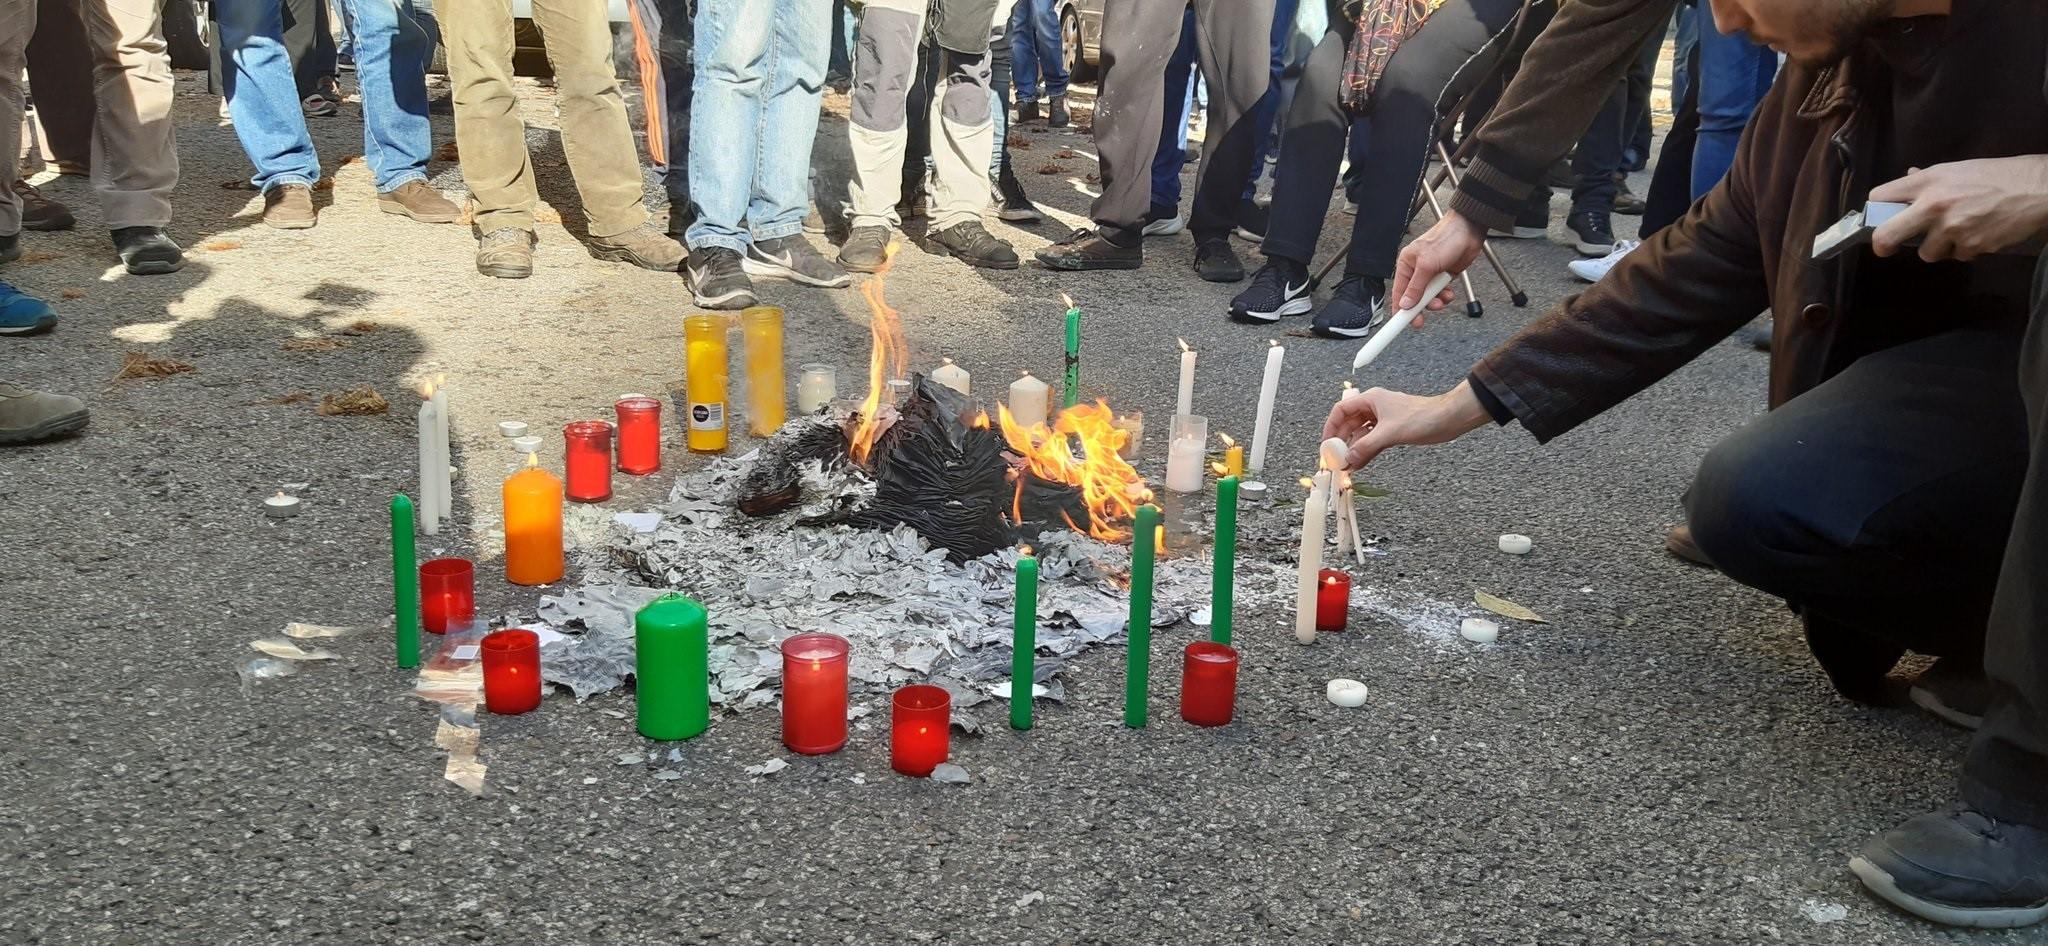 Varios independentistas queman fuego a ejemplares de la Constitución. EP